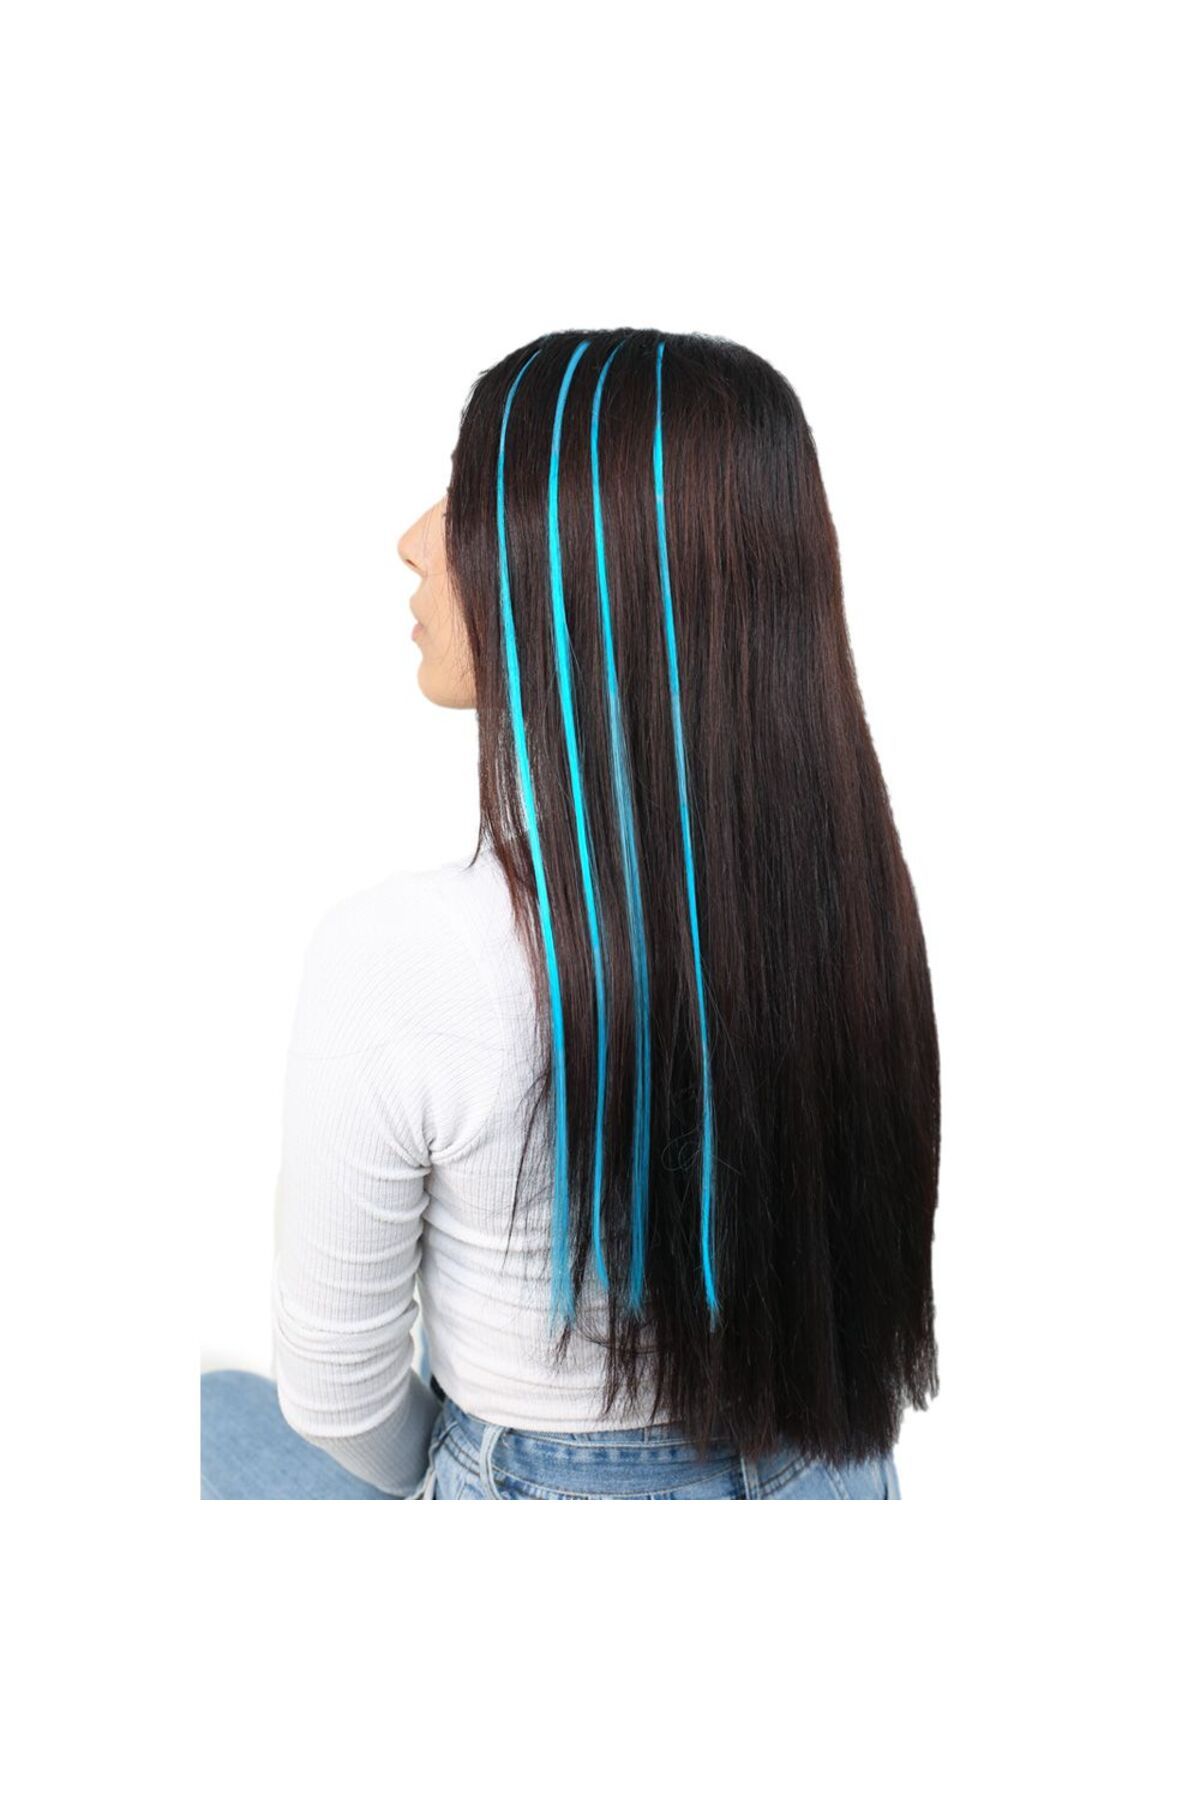 SILA Renkli Sentetik Boncuk Kaynaklık Saç + Takım Aparatı - Petrol Mavi- 10 Adet